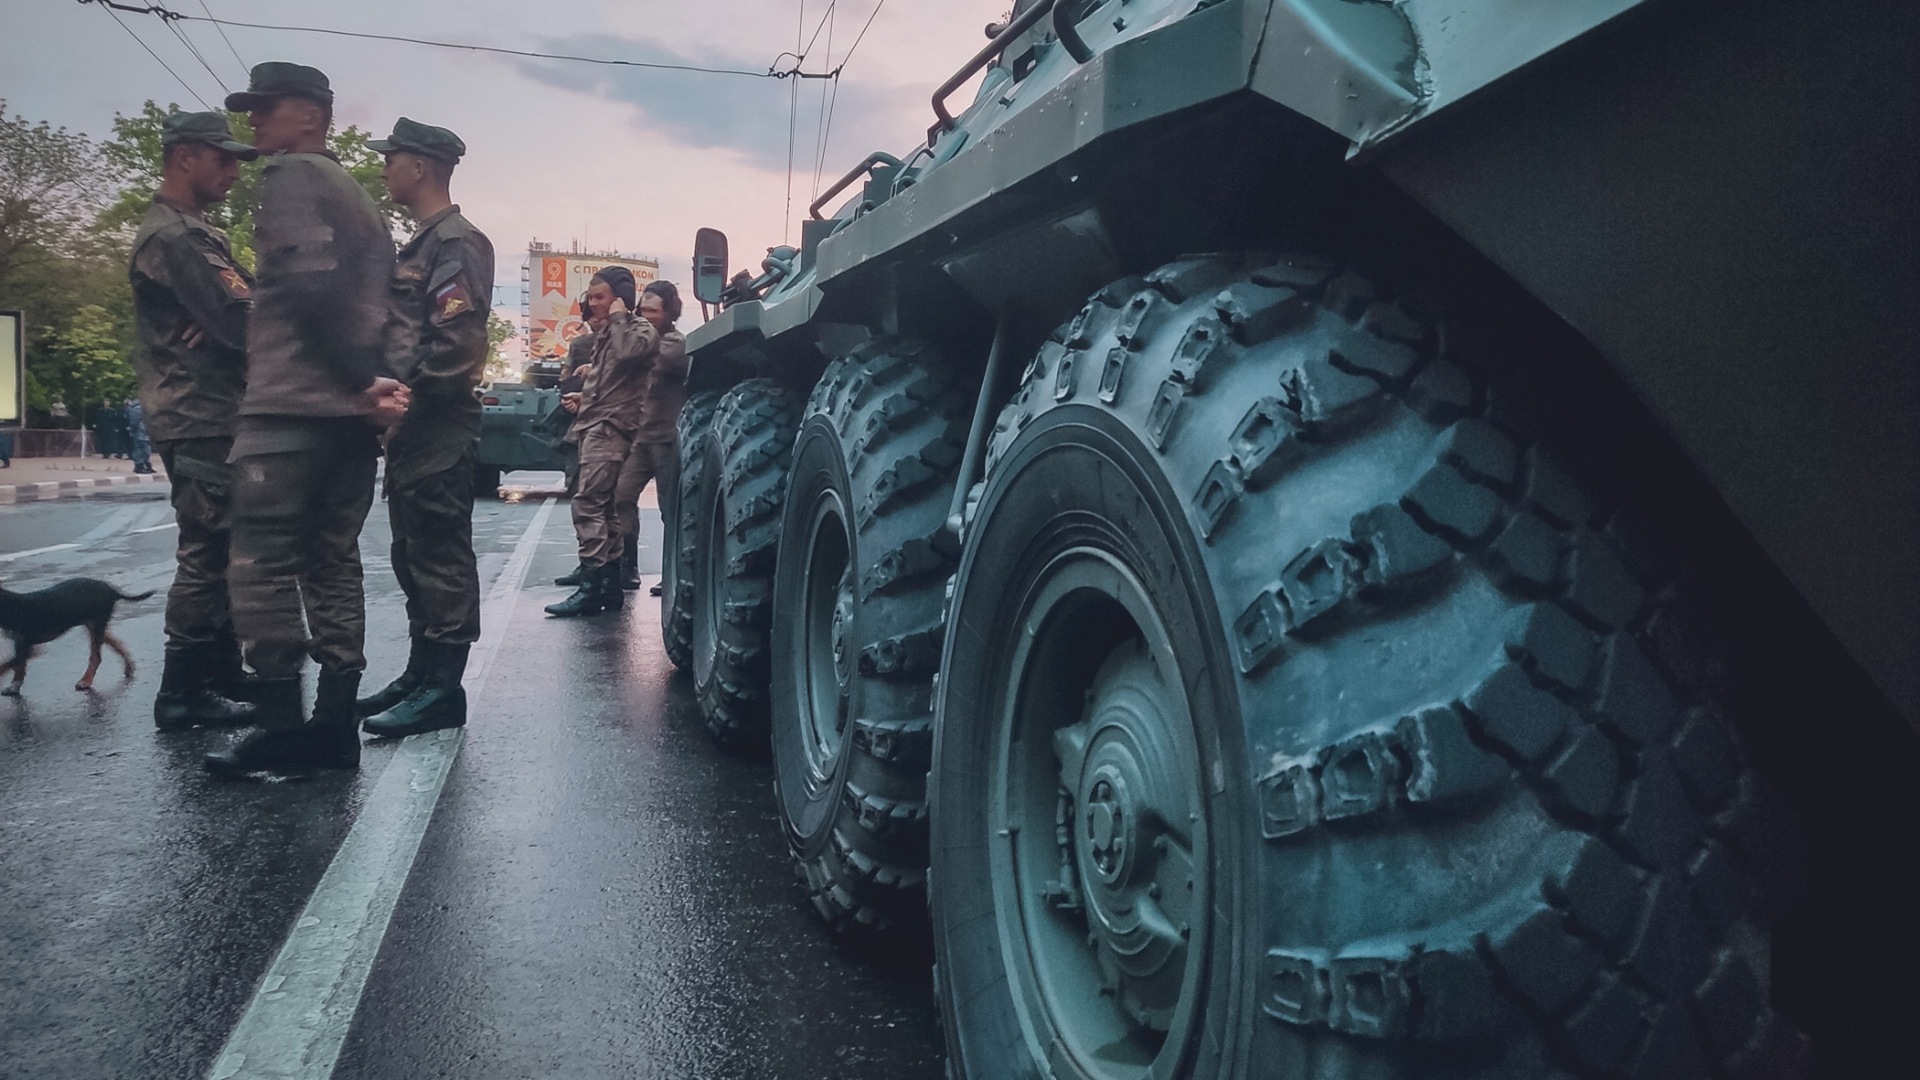 Ставропольских бойцов спасли из плена, а мобилизованным пообещали помочь с оснащением